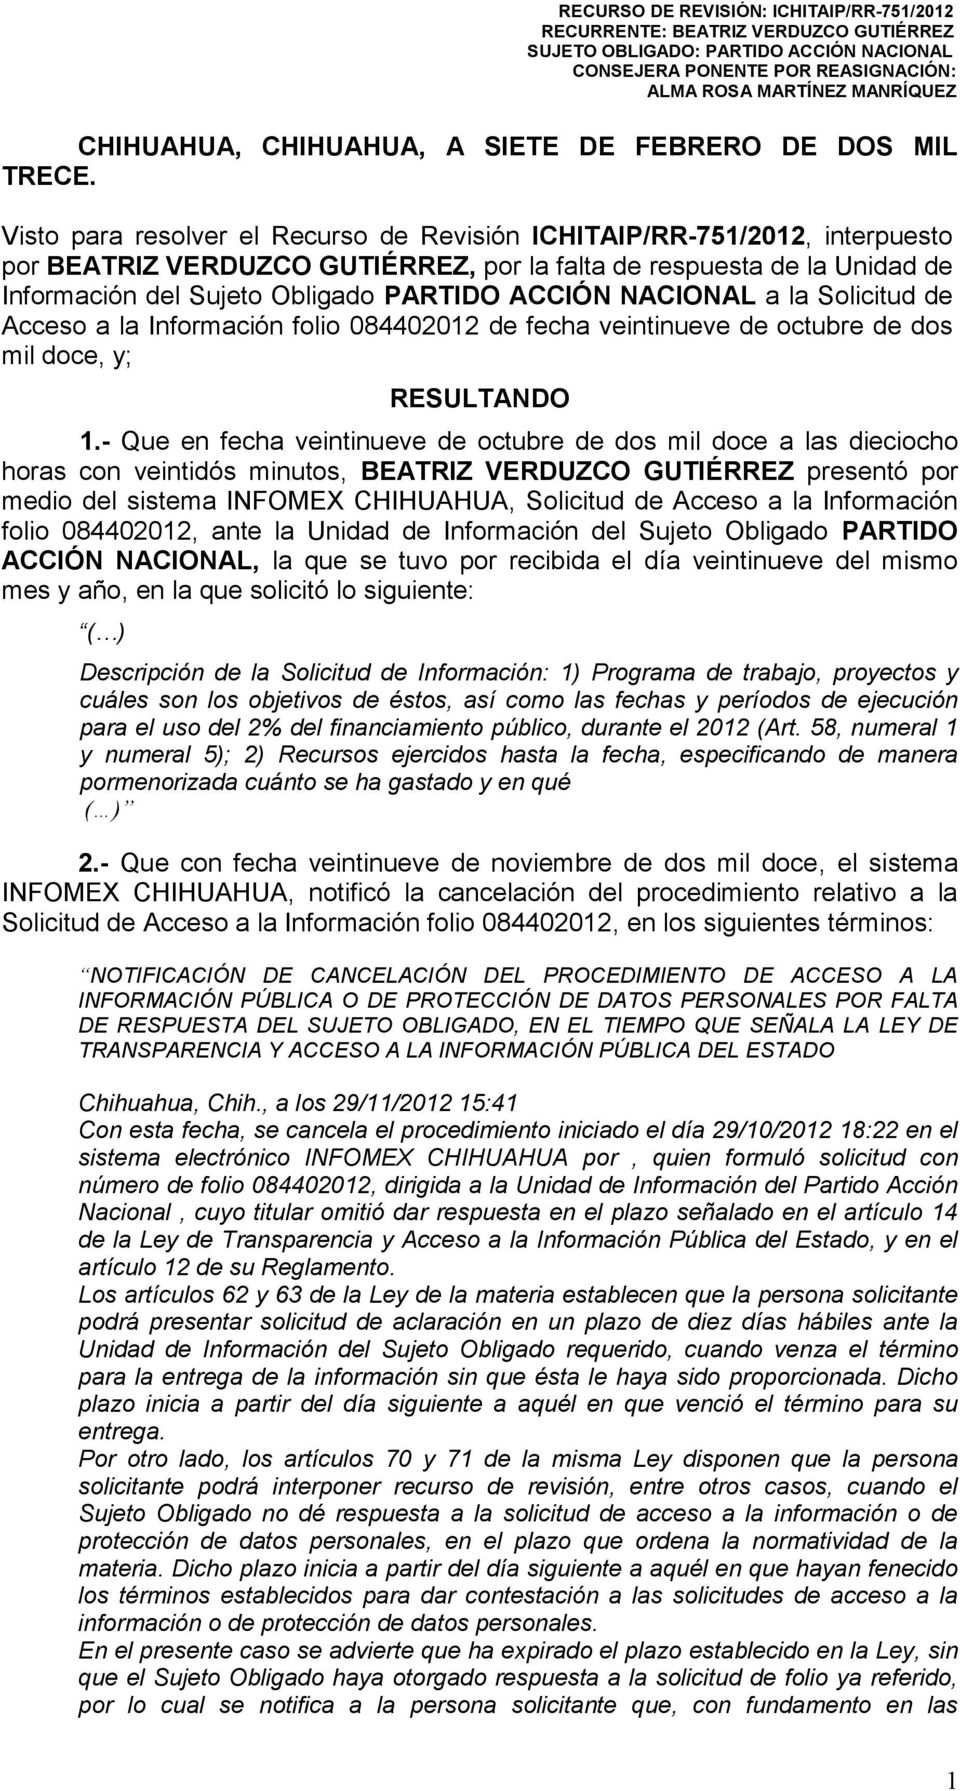 Visto para resolver el Recurso de Revisión ICHITAIP/RR-751/2012, interpuesto por BEATRIZ VERDUZCO GUTIÉRREZ, por la falta de respuesta de la Unidad de Información del Sujeto Obligado PARTIDO ACCIÓN